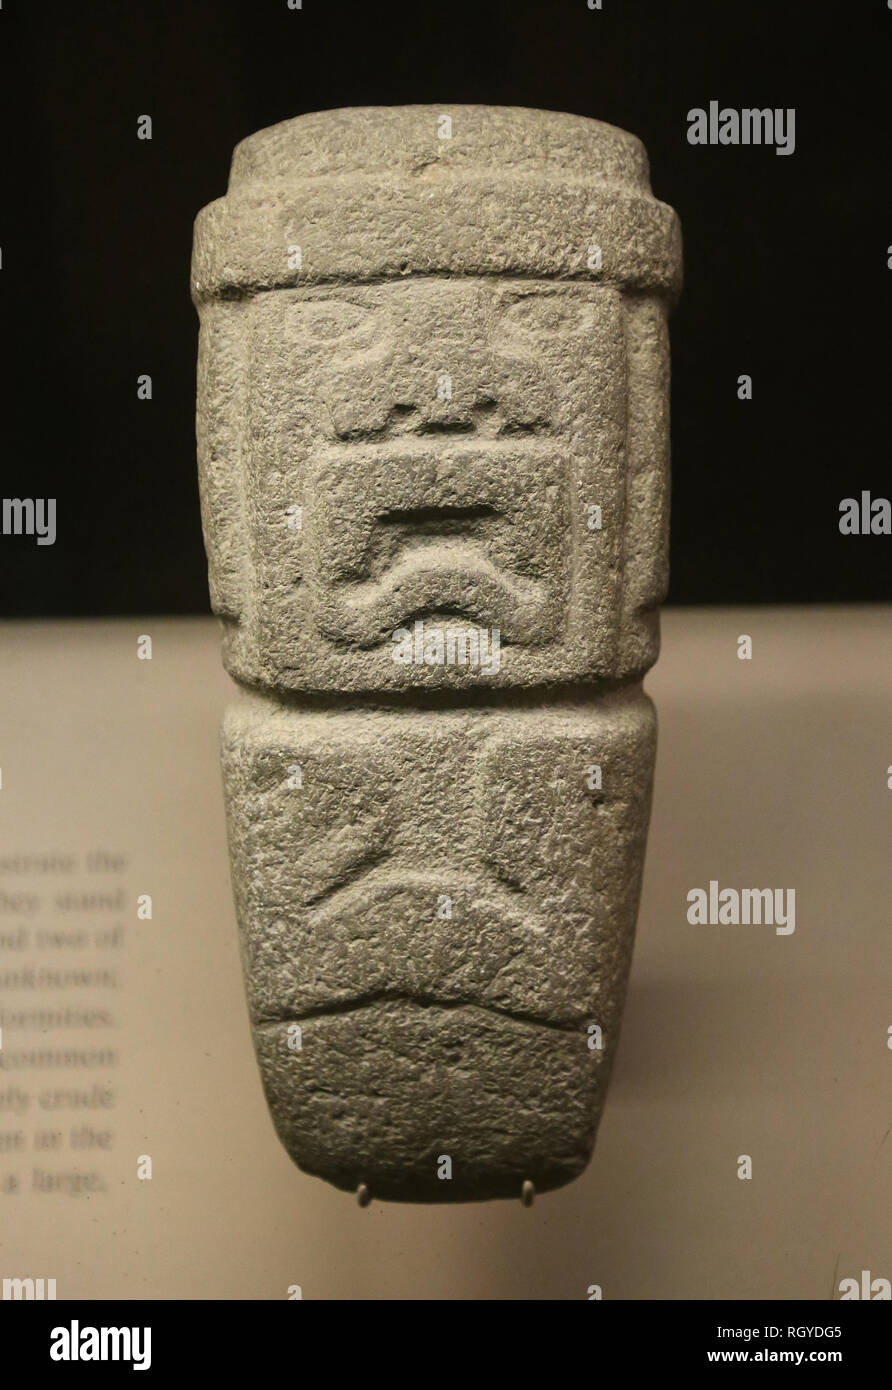 La culture olmèque. Kunz Ax, 1000-400 BC. Amerian Musée d'Histoire Naturelle. Ny. USA Banque D'Images